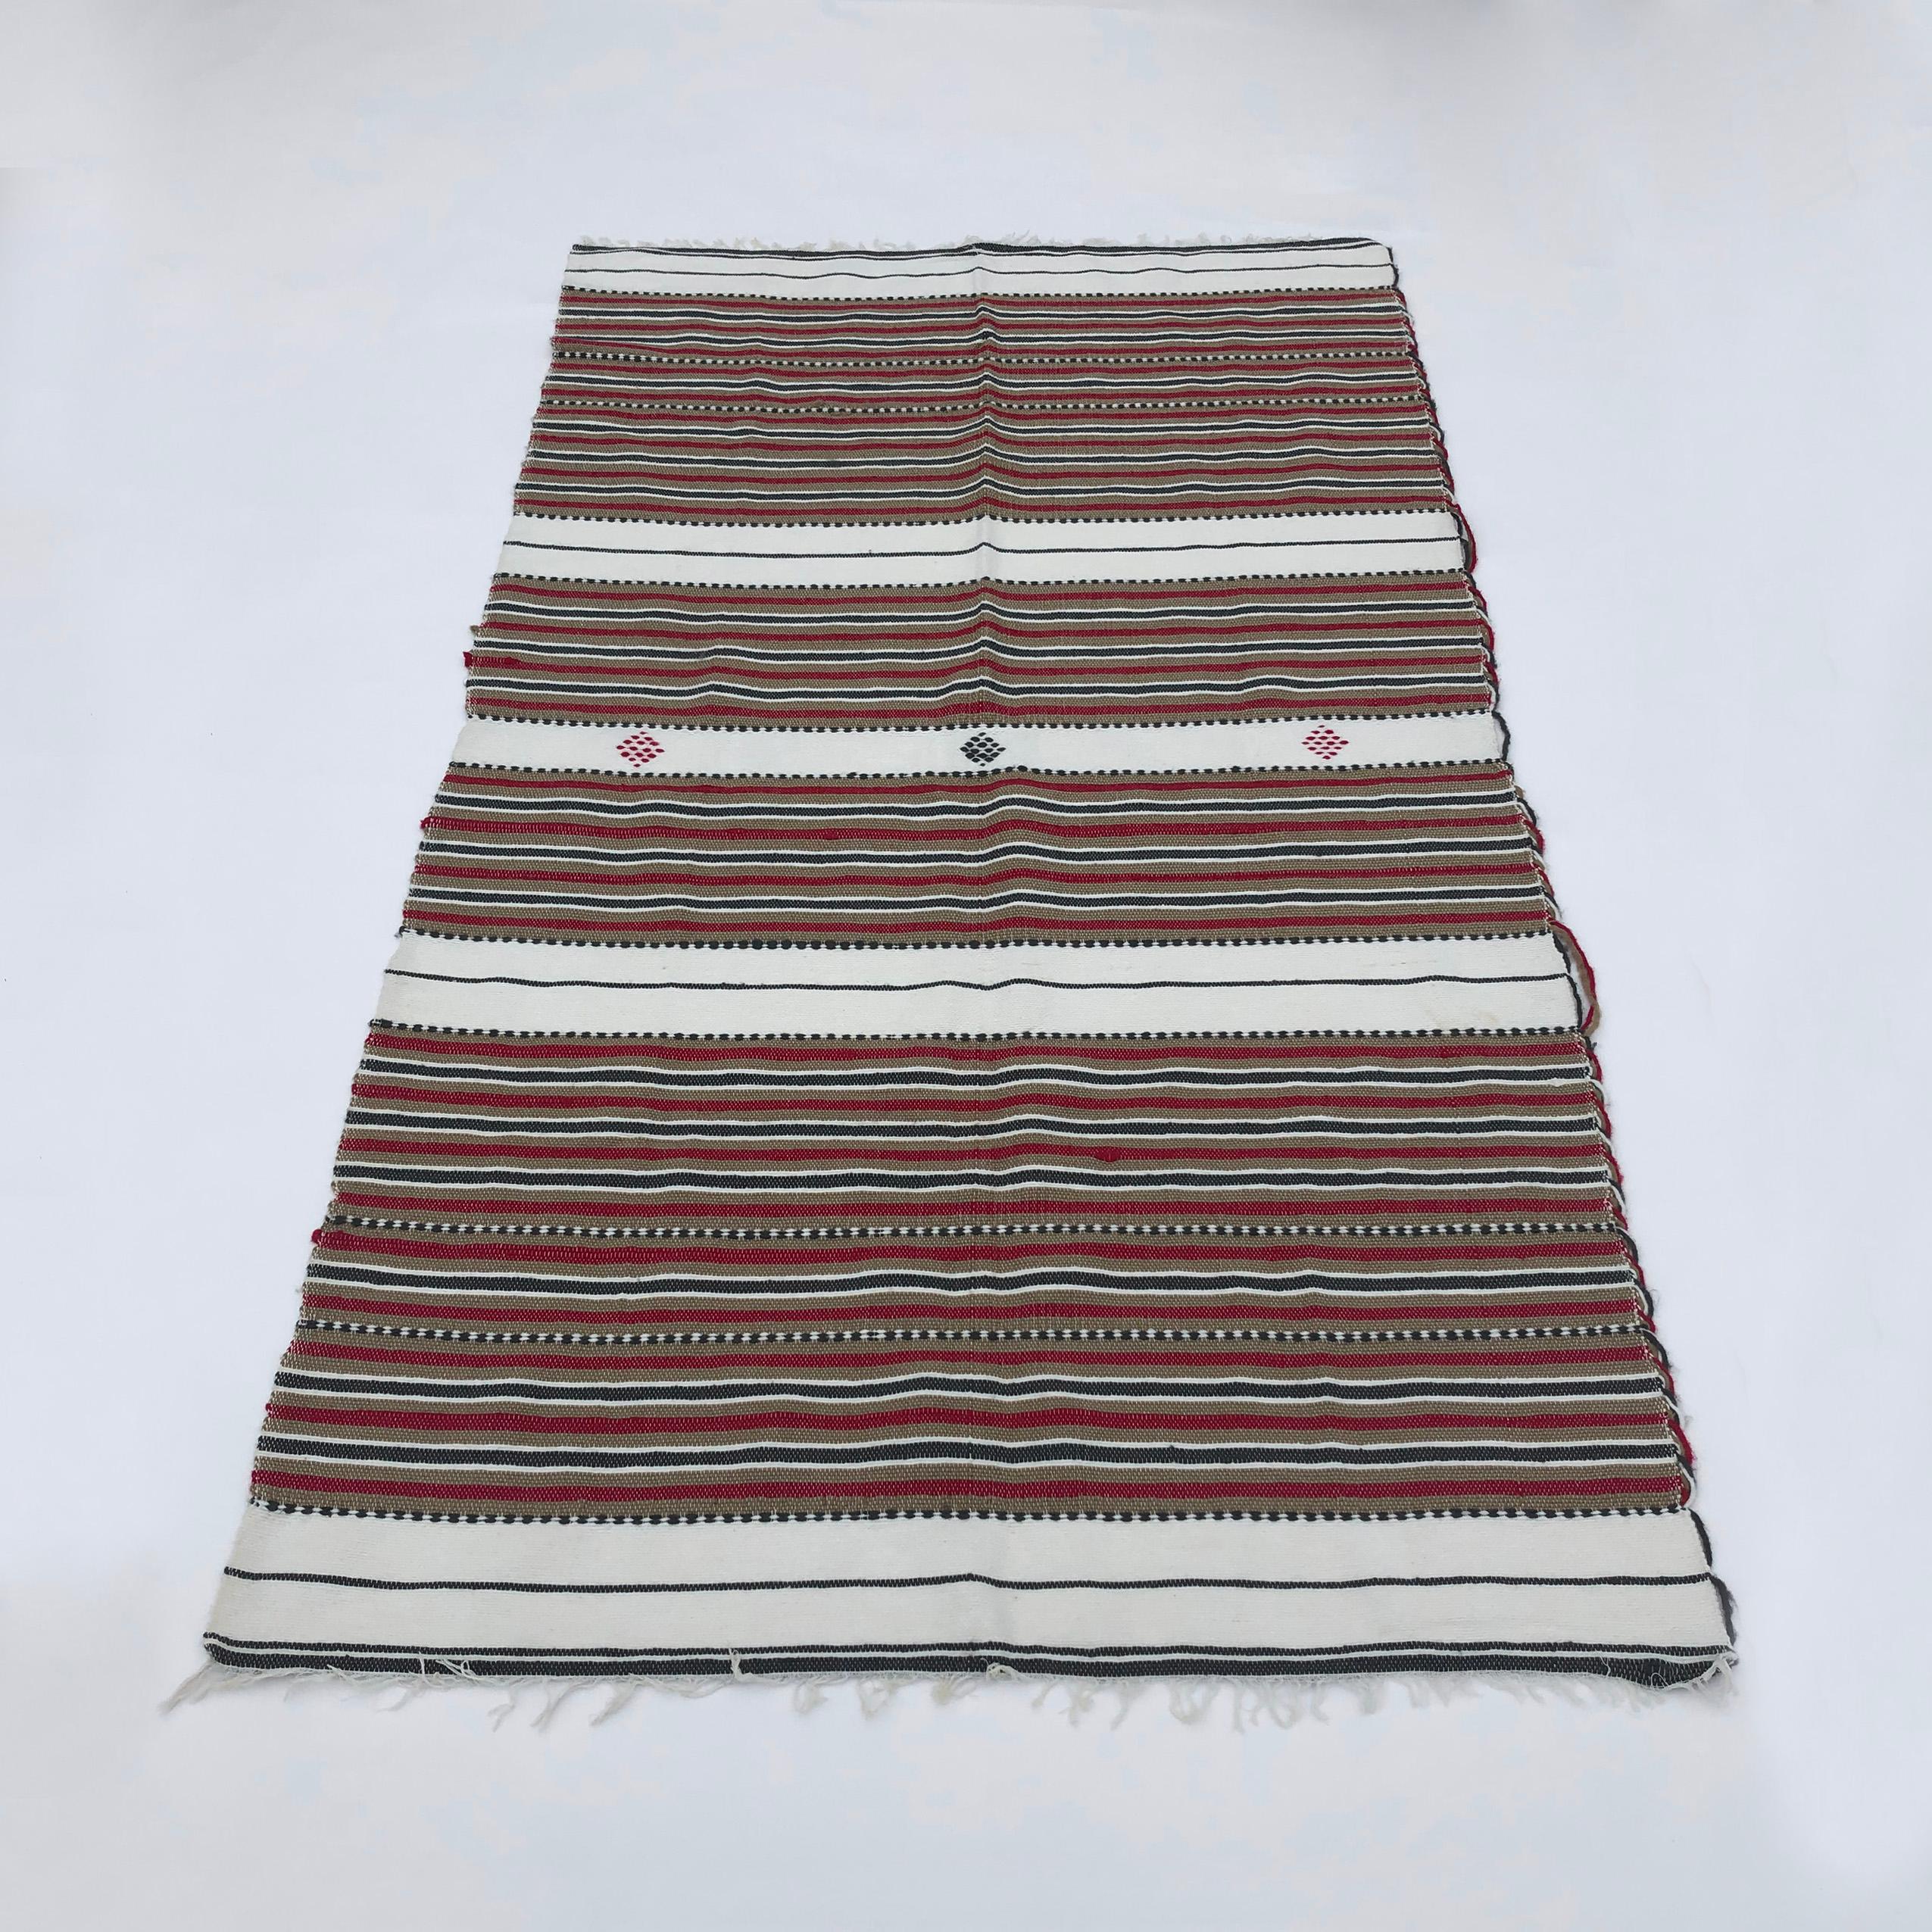 Tapis vintage en laine fait main, datant des années 1970 en Algérie, avec des rayures tricolores d'un rouge agréable,  bruns et noirs. Les fils de laine proviennent d'élevages éthiques et sont teints et traités à la main par des habitants de la